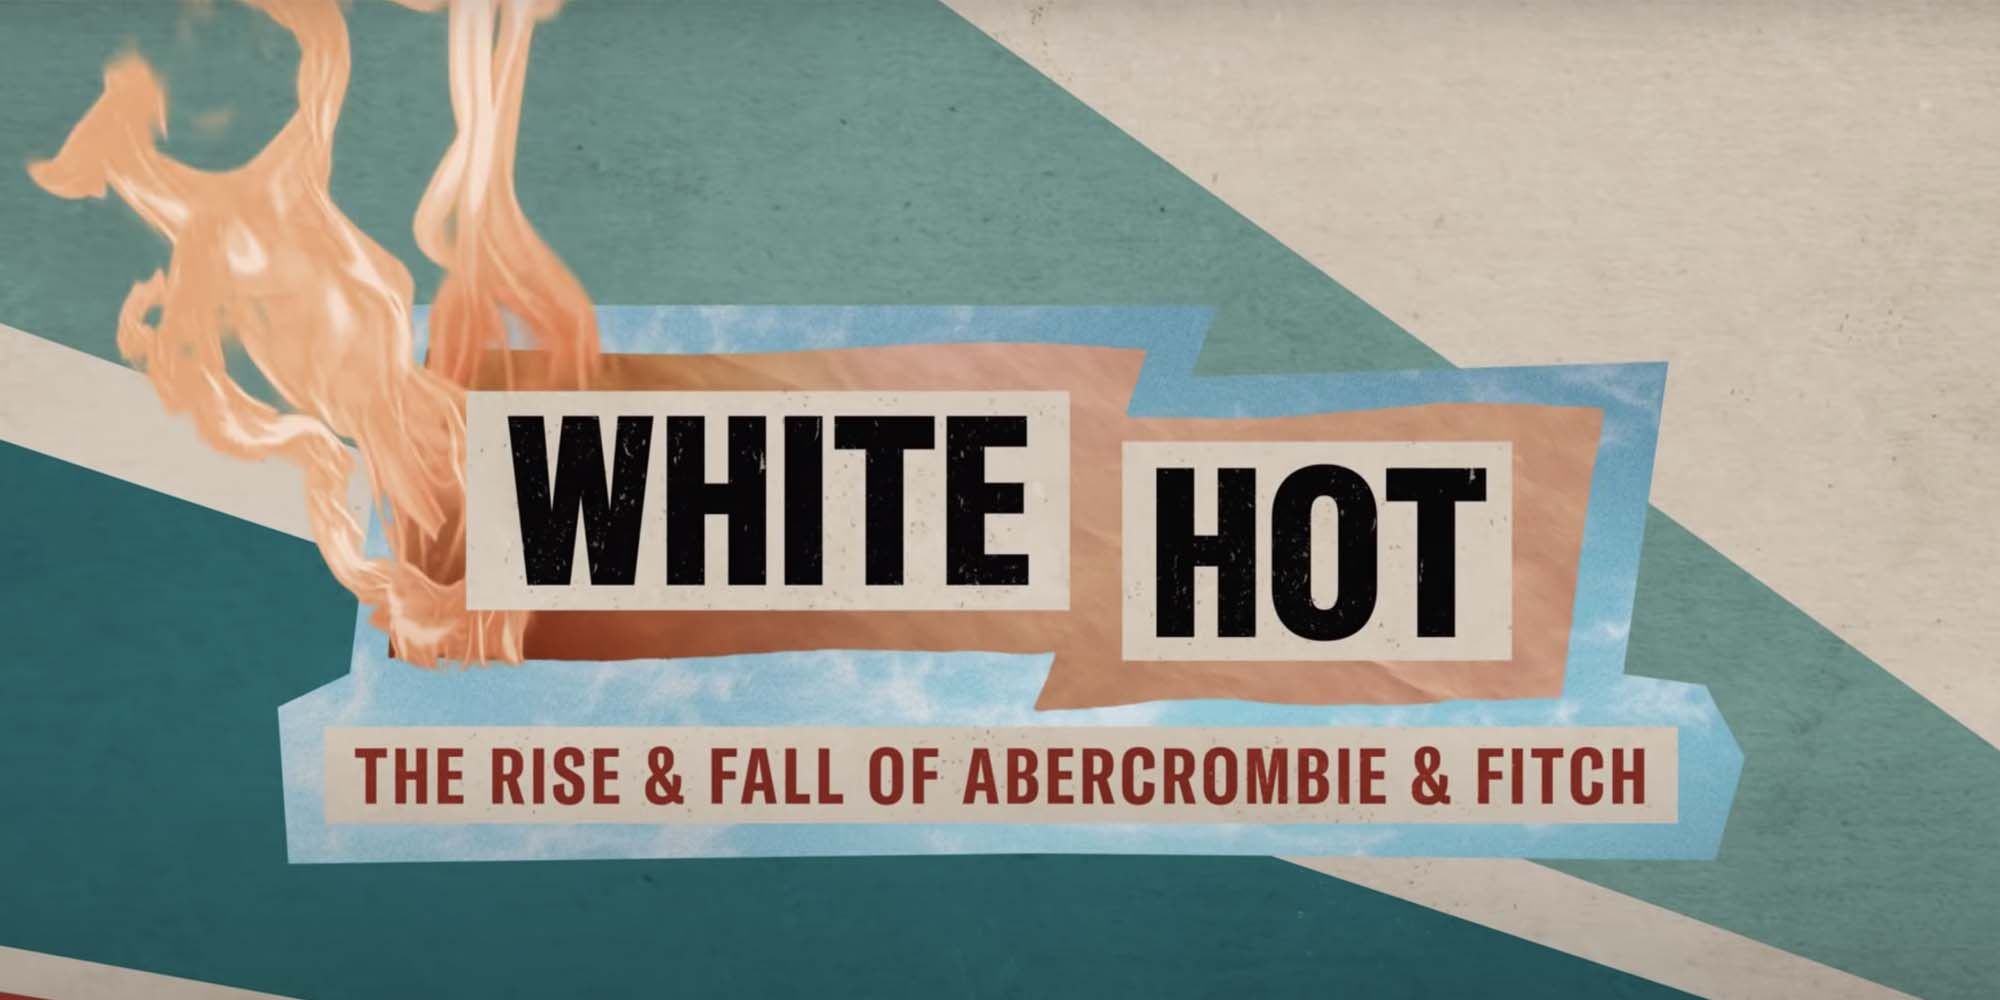 El tráiler documental de Abercrombie & Fitch explora el auge y la caída de la marca